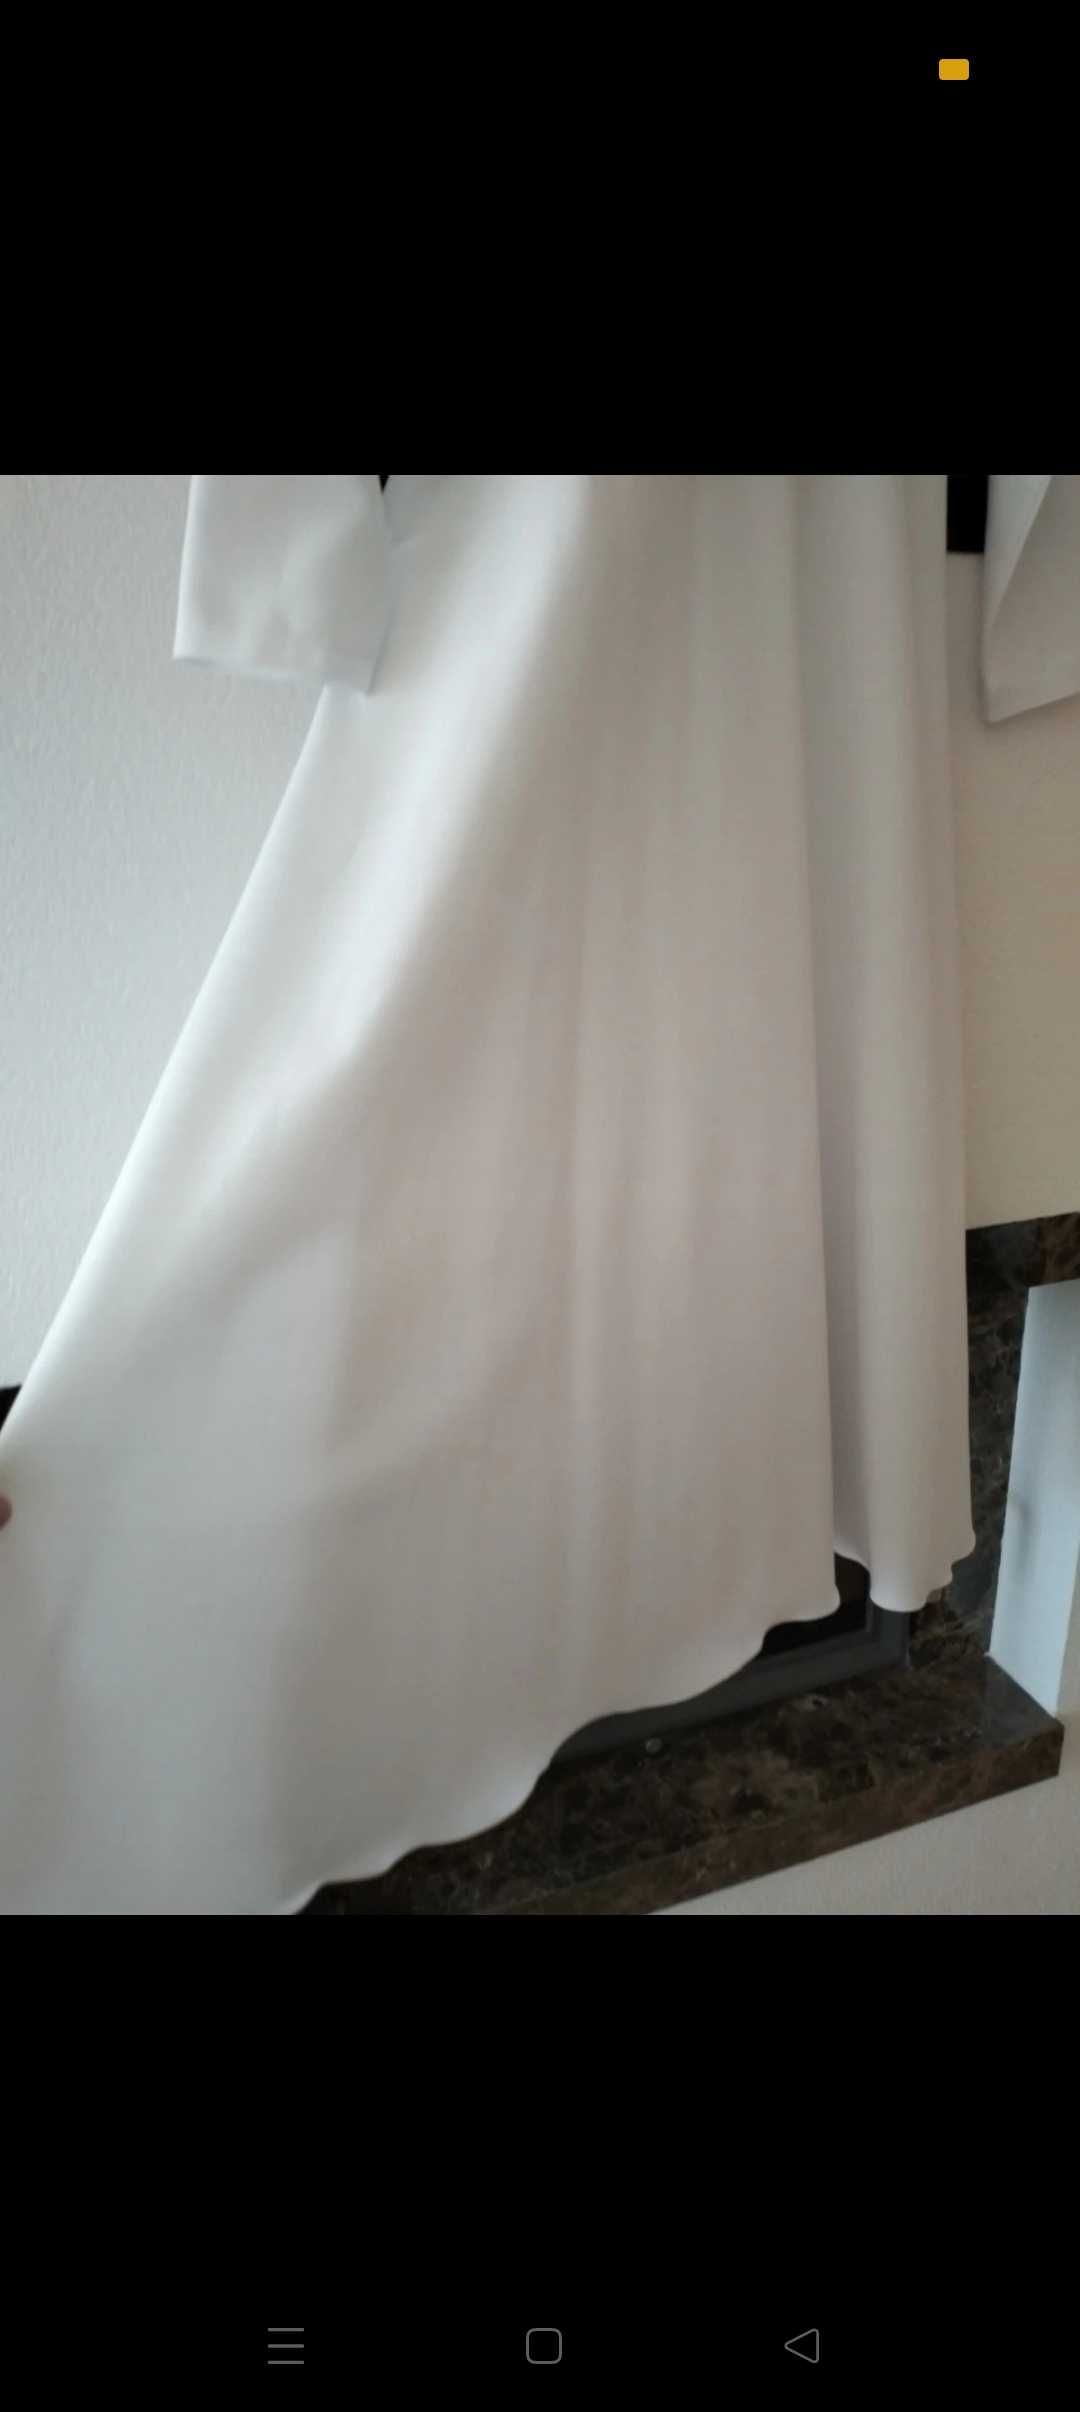 Sukienka komunijna biała rozmiar 140